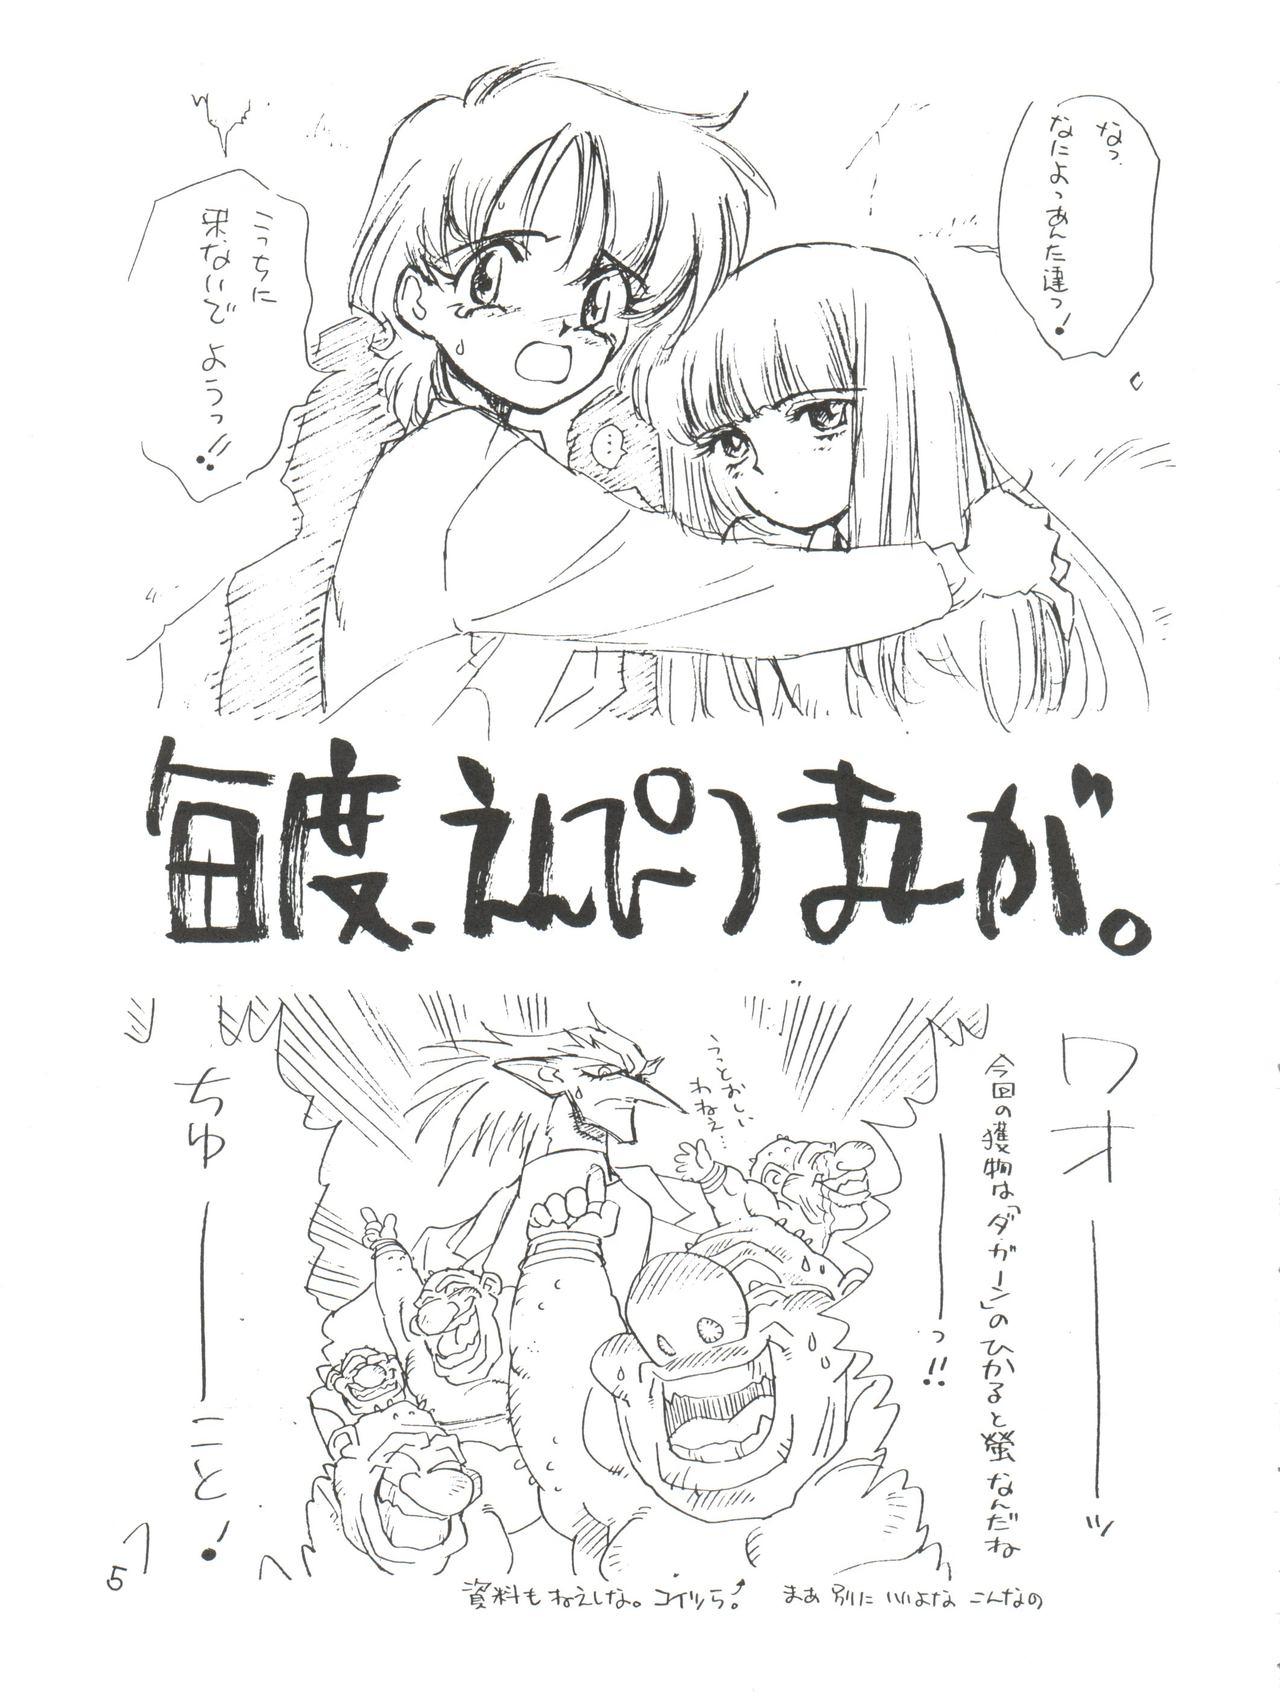 Milfporn Tororoimo Morihiro - Dragon quest Hime chans ribbon Densetsu no yuusha da garn Punishment - Page 5